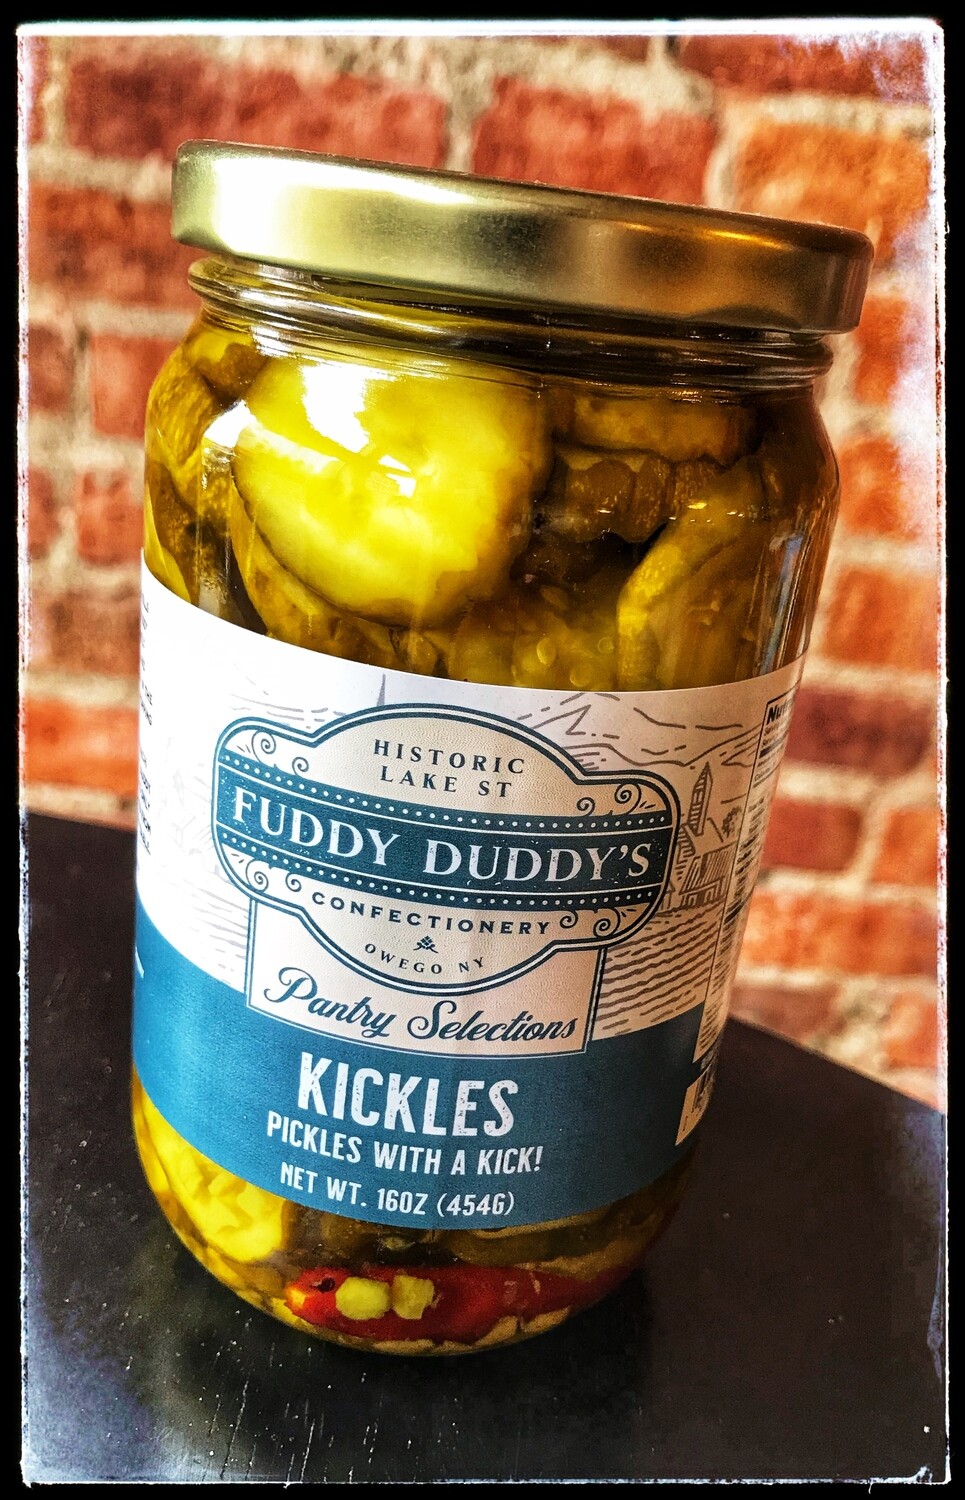 Fuddy Duddy's Kickles (Pickles with a Kick!)